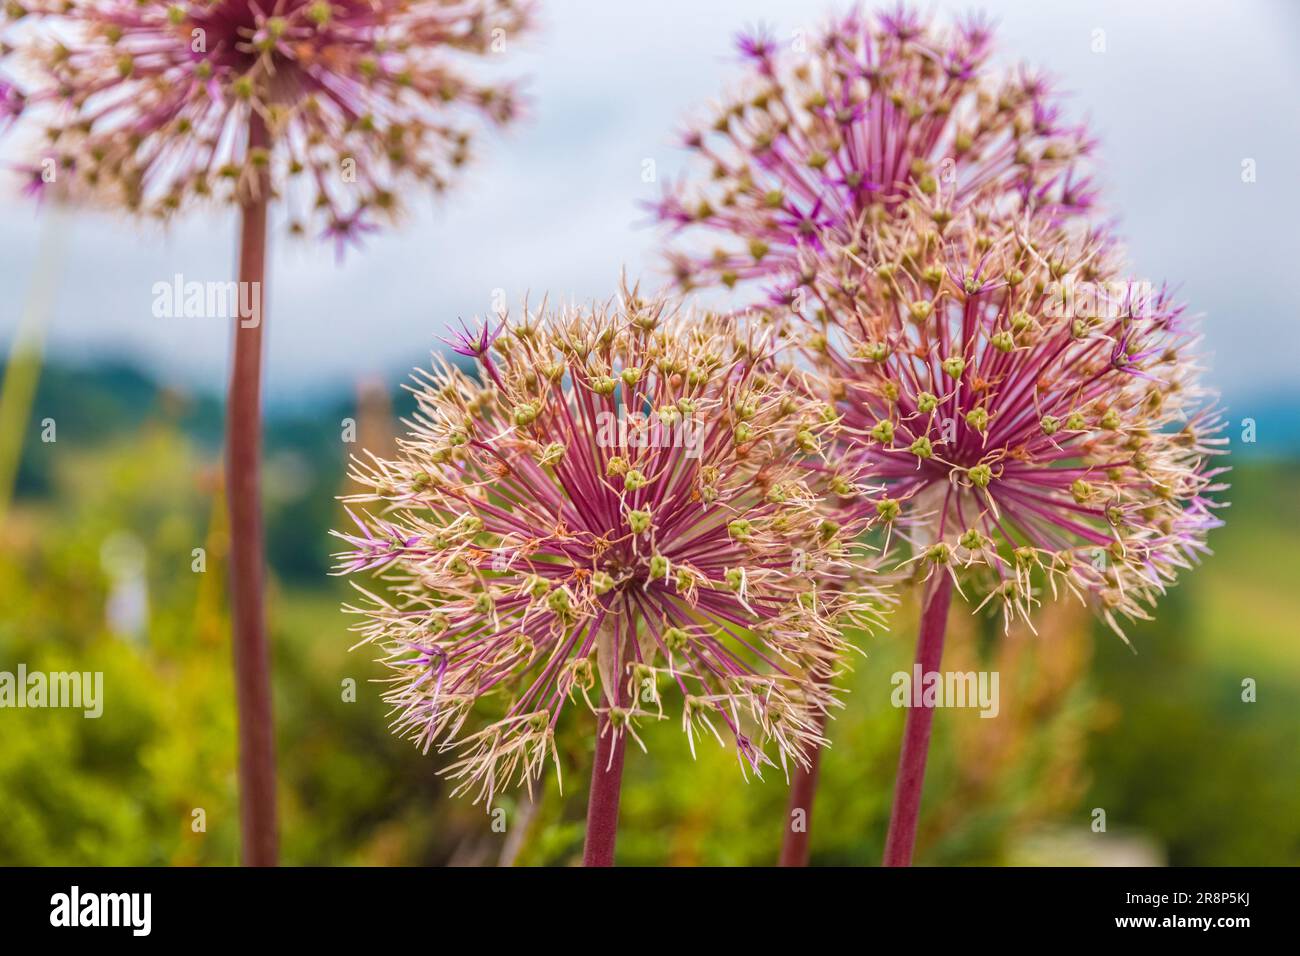 Wunderschöne Nahaufnahme von mehreren kugelförmigen Blütenköpfen der Allium cristophii, der persischen Zwiebel oder des Sterns von Persien. Die blühenden Pflanzen wachsen... Stockfoto